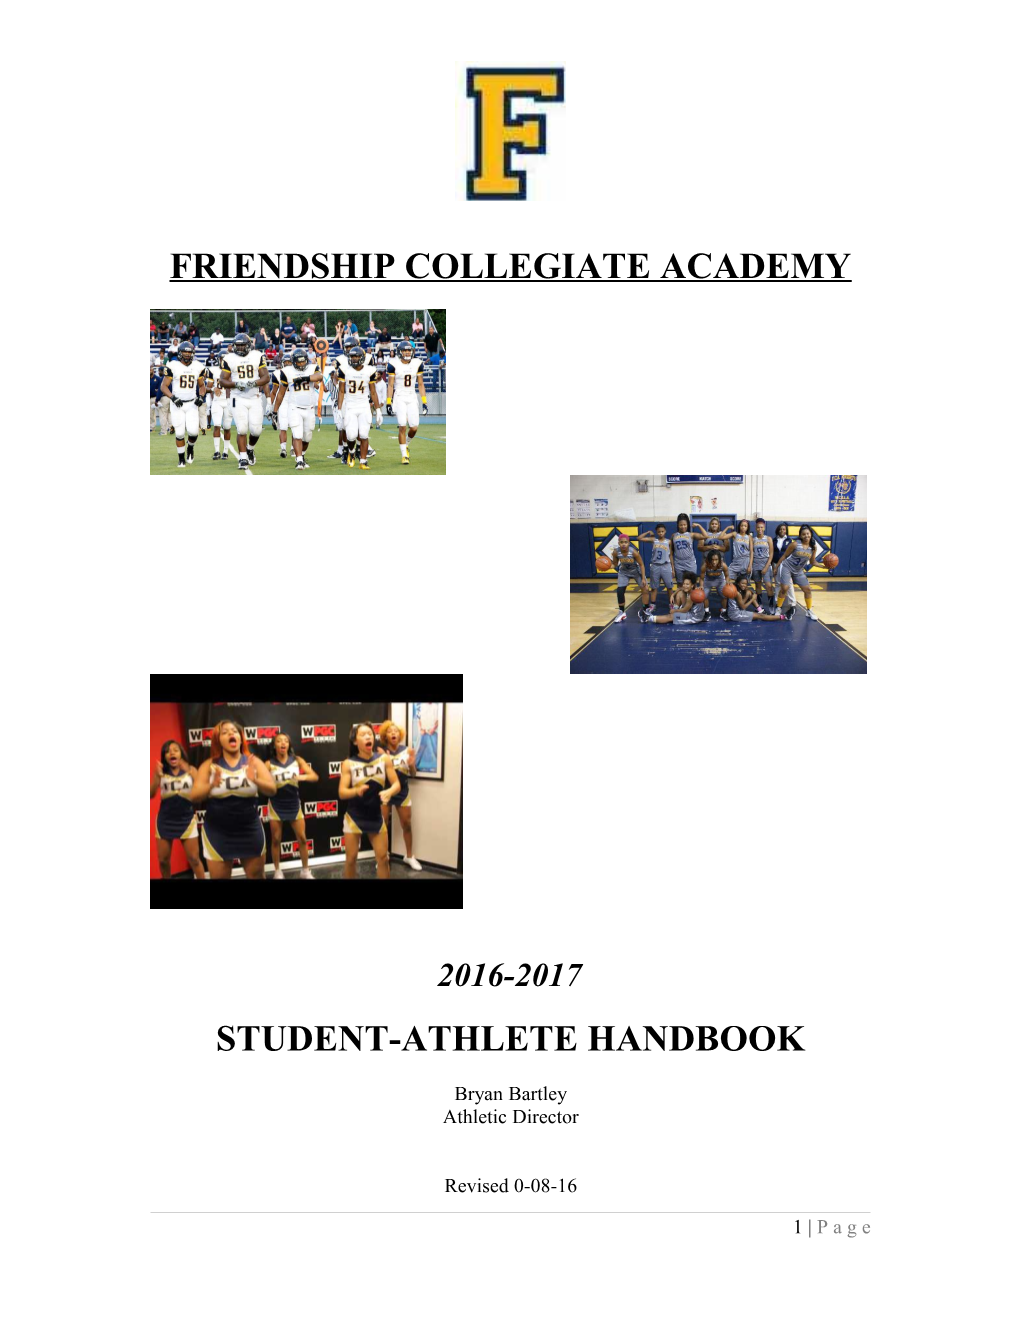 Friendship Collegiate Academy